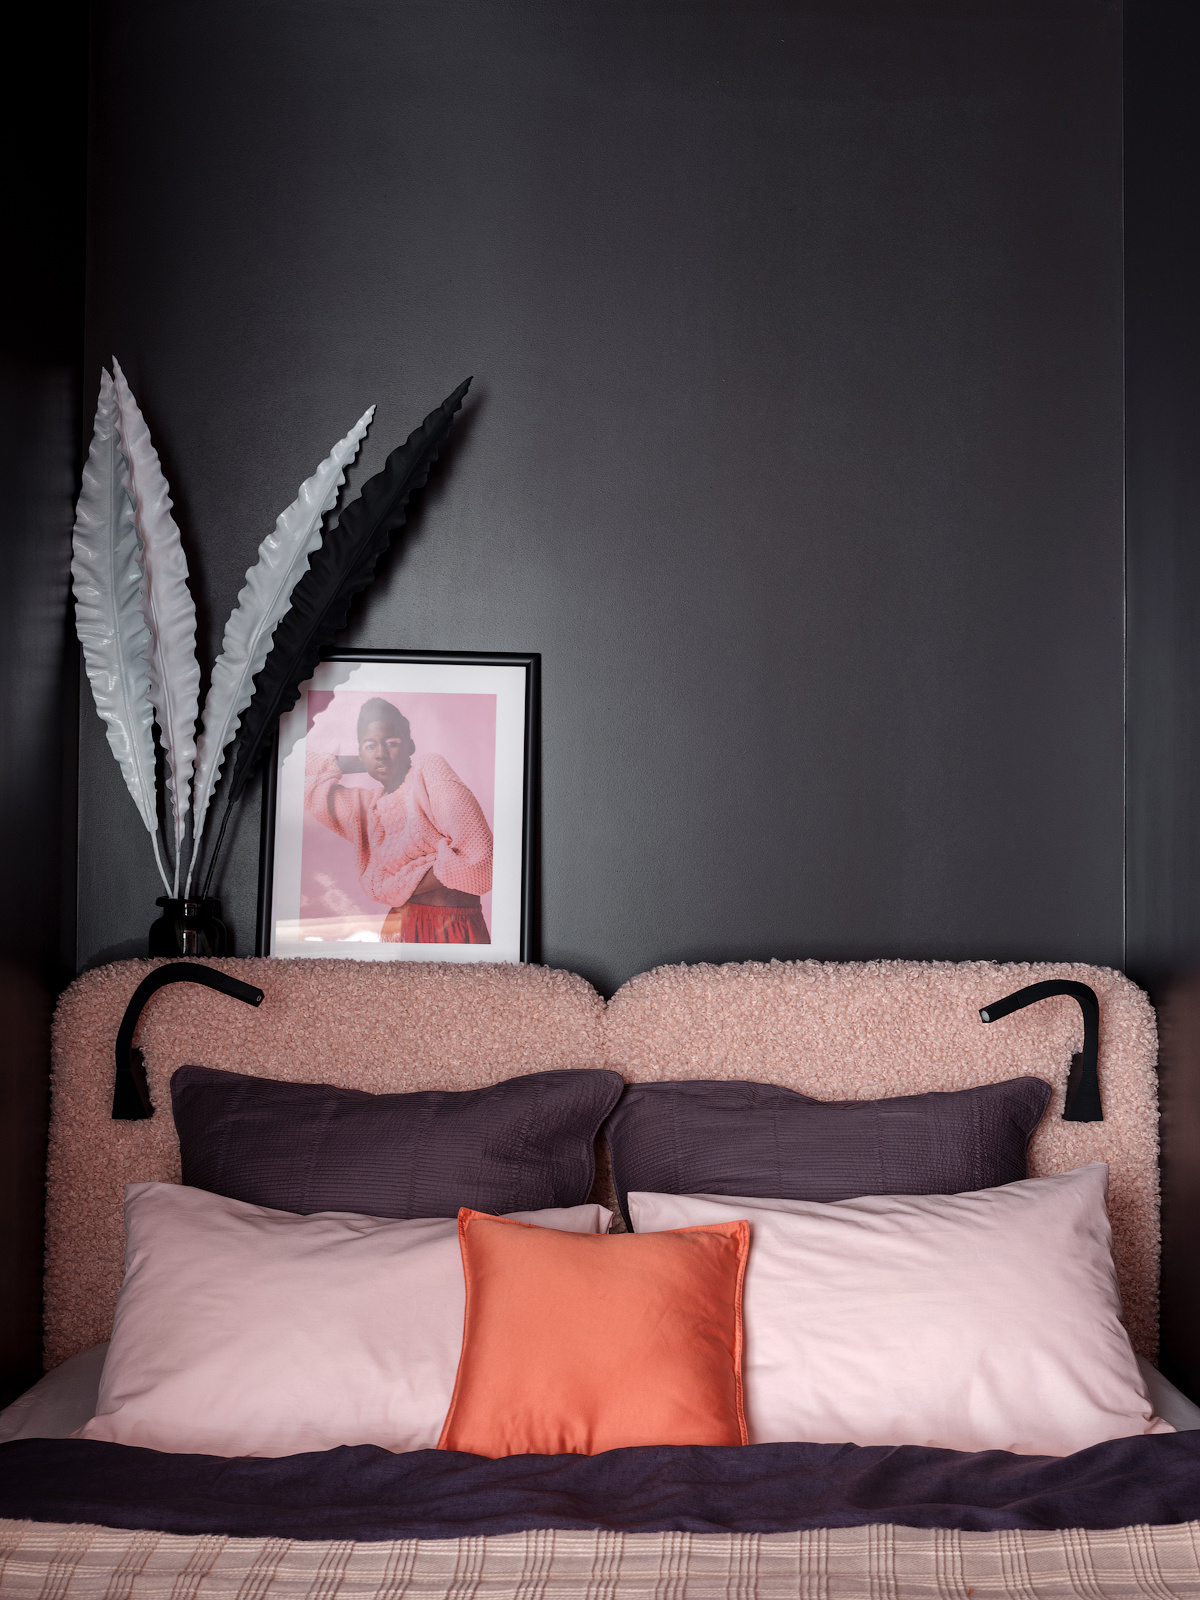 Nếu bên ngoài 'ốc đảo' riêng tư được sơn màu tím quyền lực thì bên trong tường phòng ngủ lại chọn màu xám đen cá tính. Trên phông nền tối đậm ấy, những gam màu yêu thích như hồng phấn, tím, cam san hô lại trở nên vô cùng nổi bật và ấm áp.